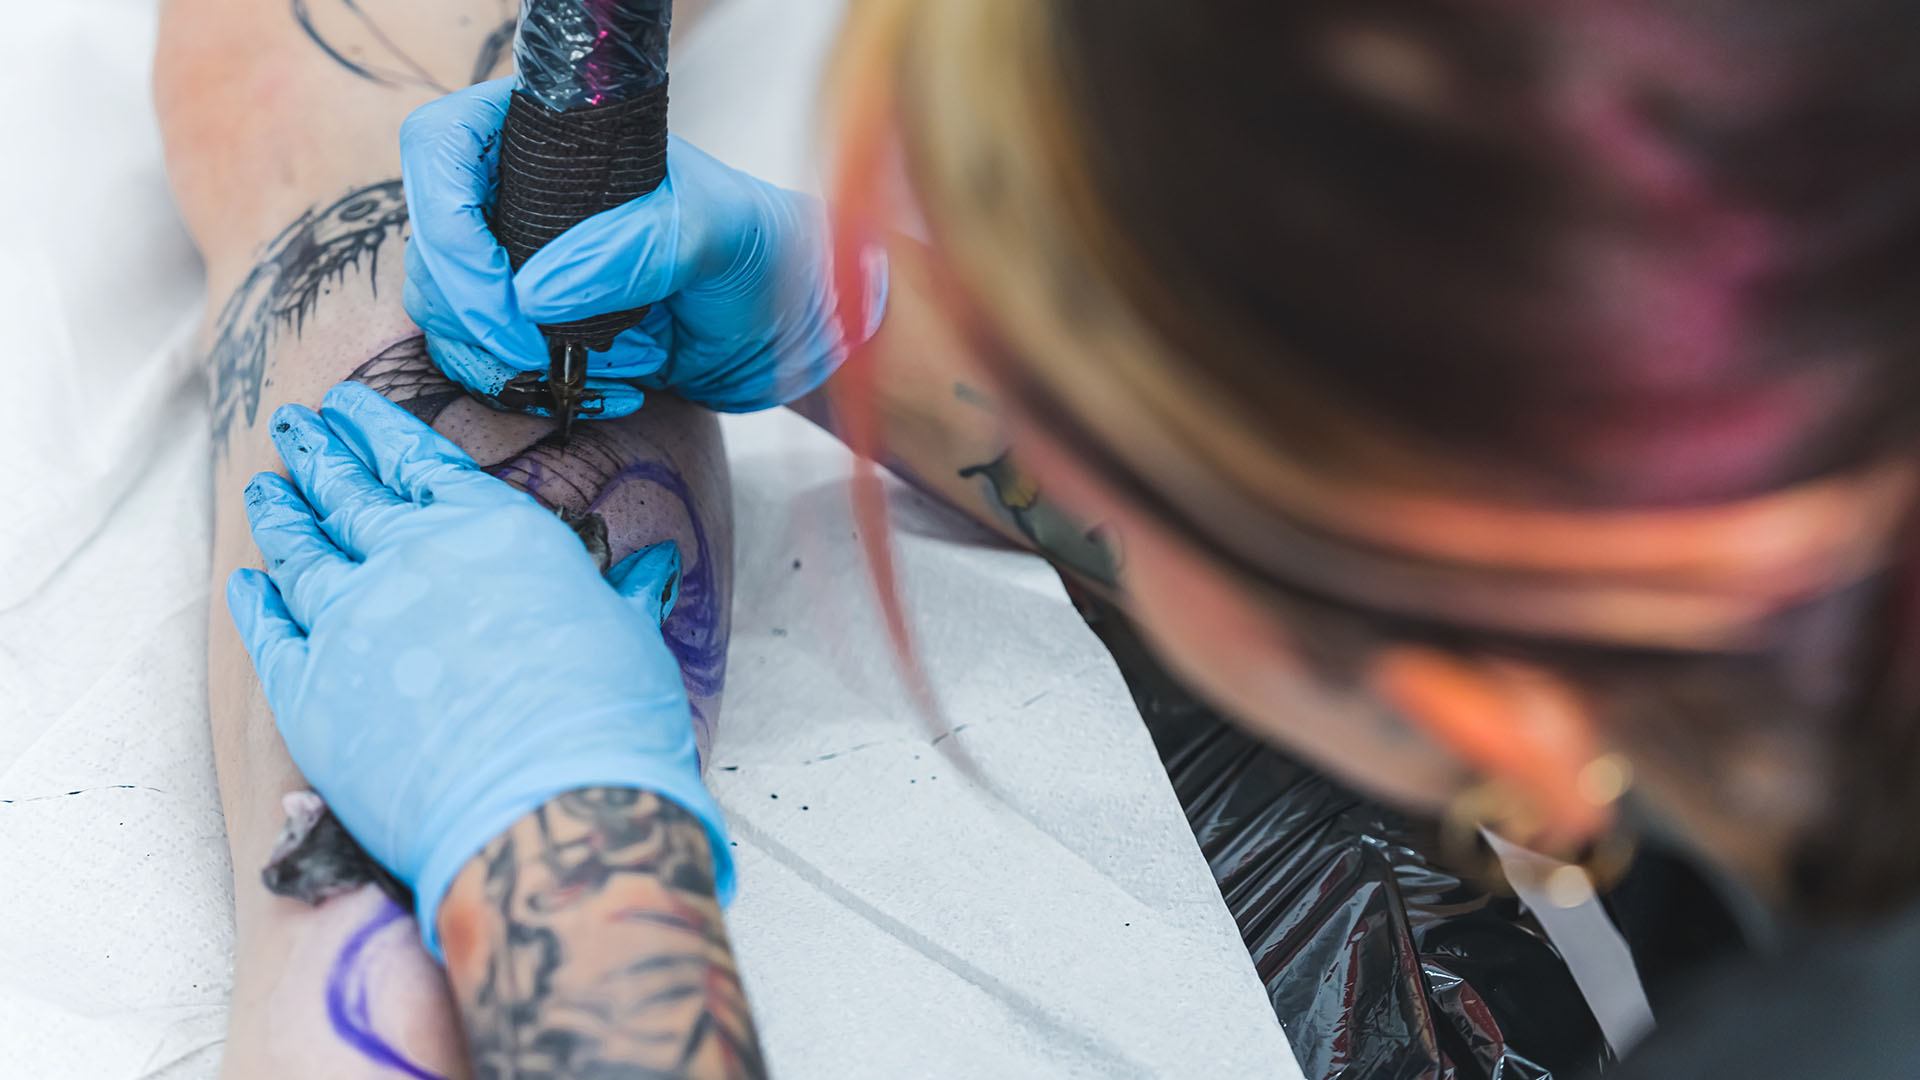 Tatuerare arbetar med en tatuering på ett ben.